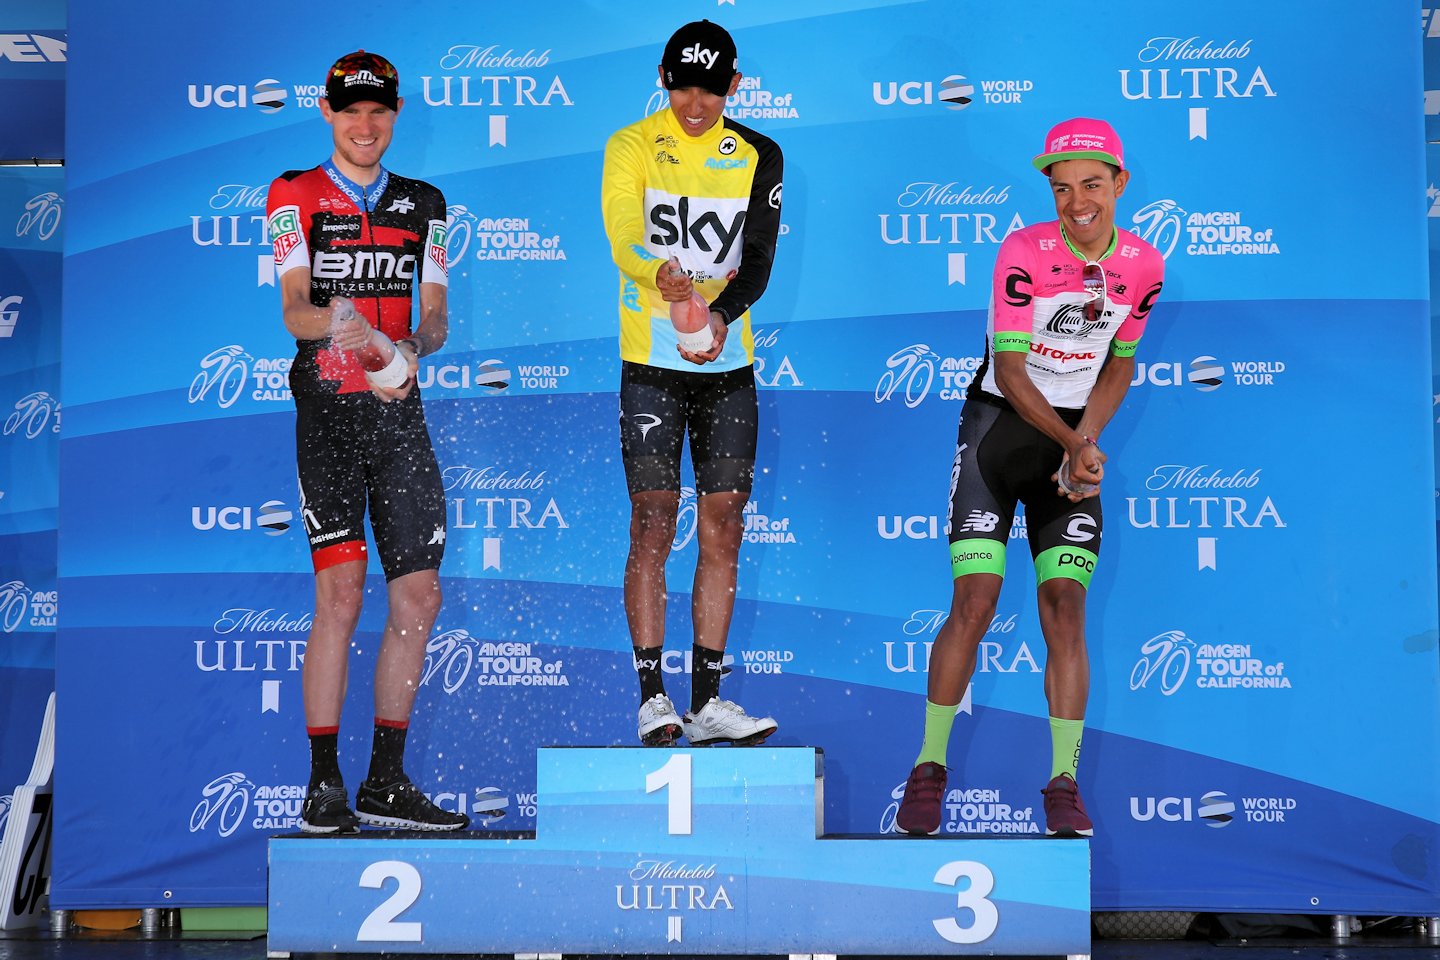 Tour of California 2018 etap 7. Egan Bernal najmłodszym zwycięzcą w